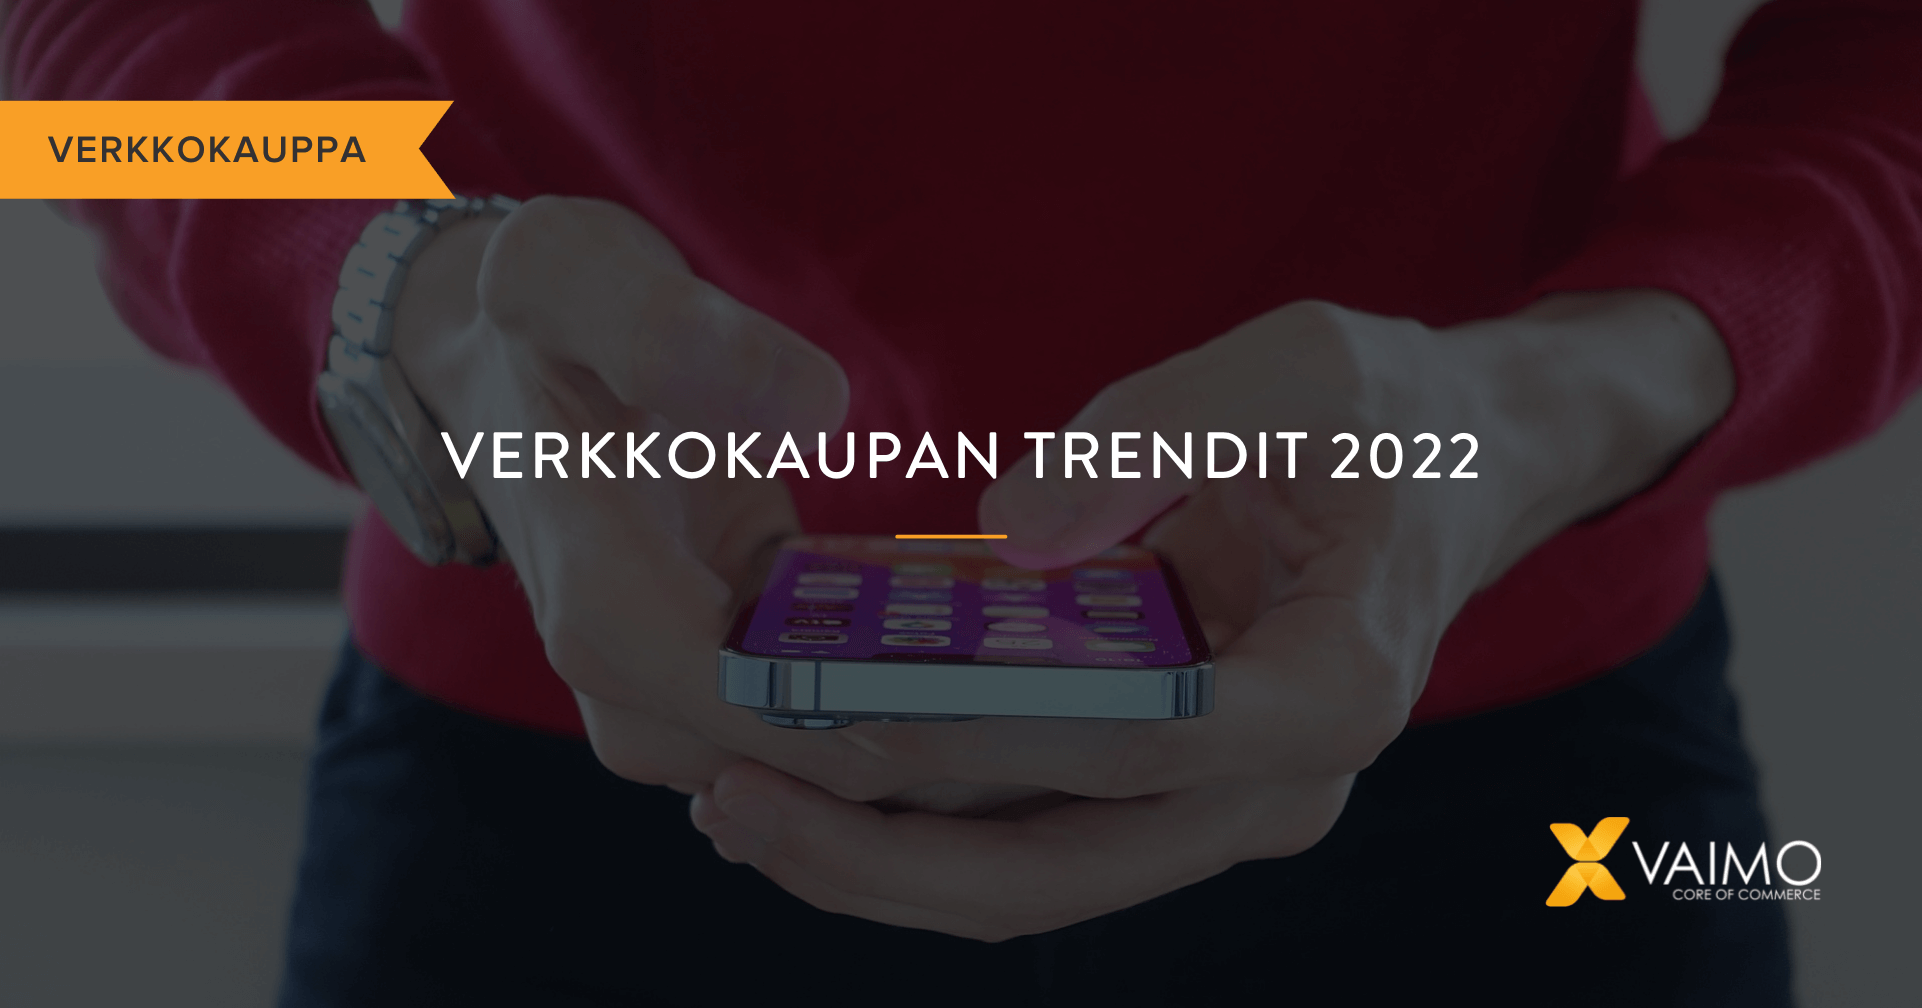 Verkkokaupan tulevaisuuden näkymät – katsaus vuoteen 2022